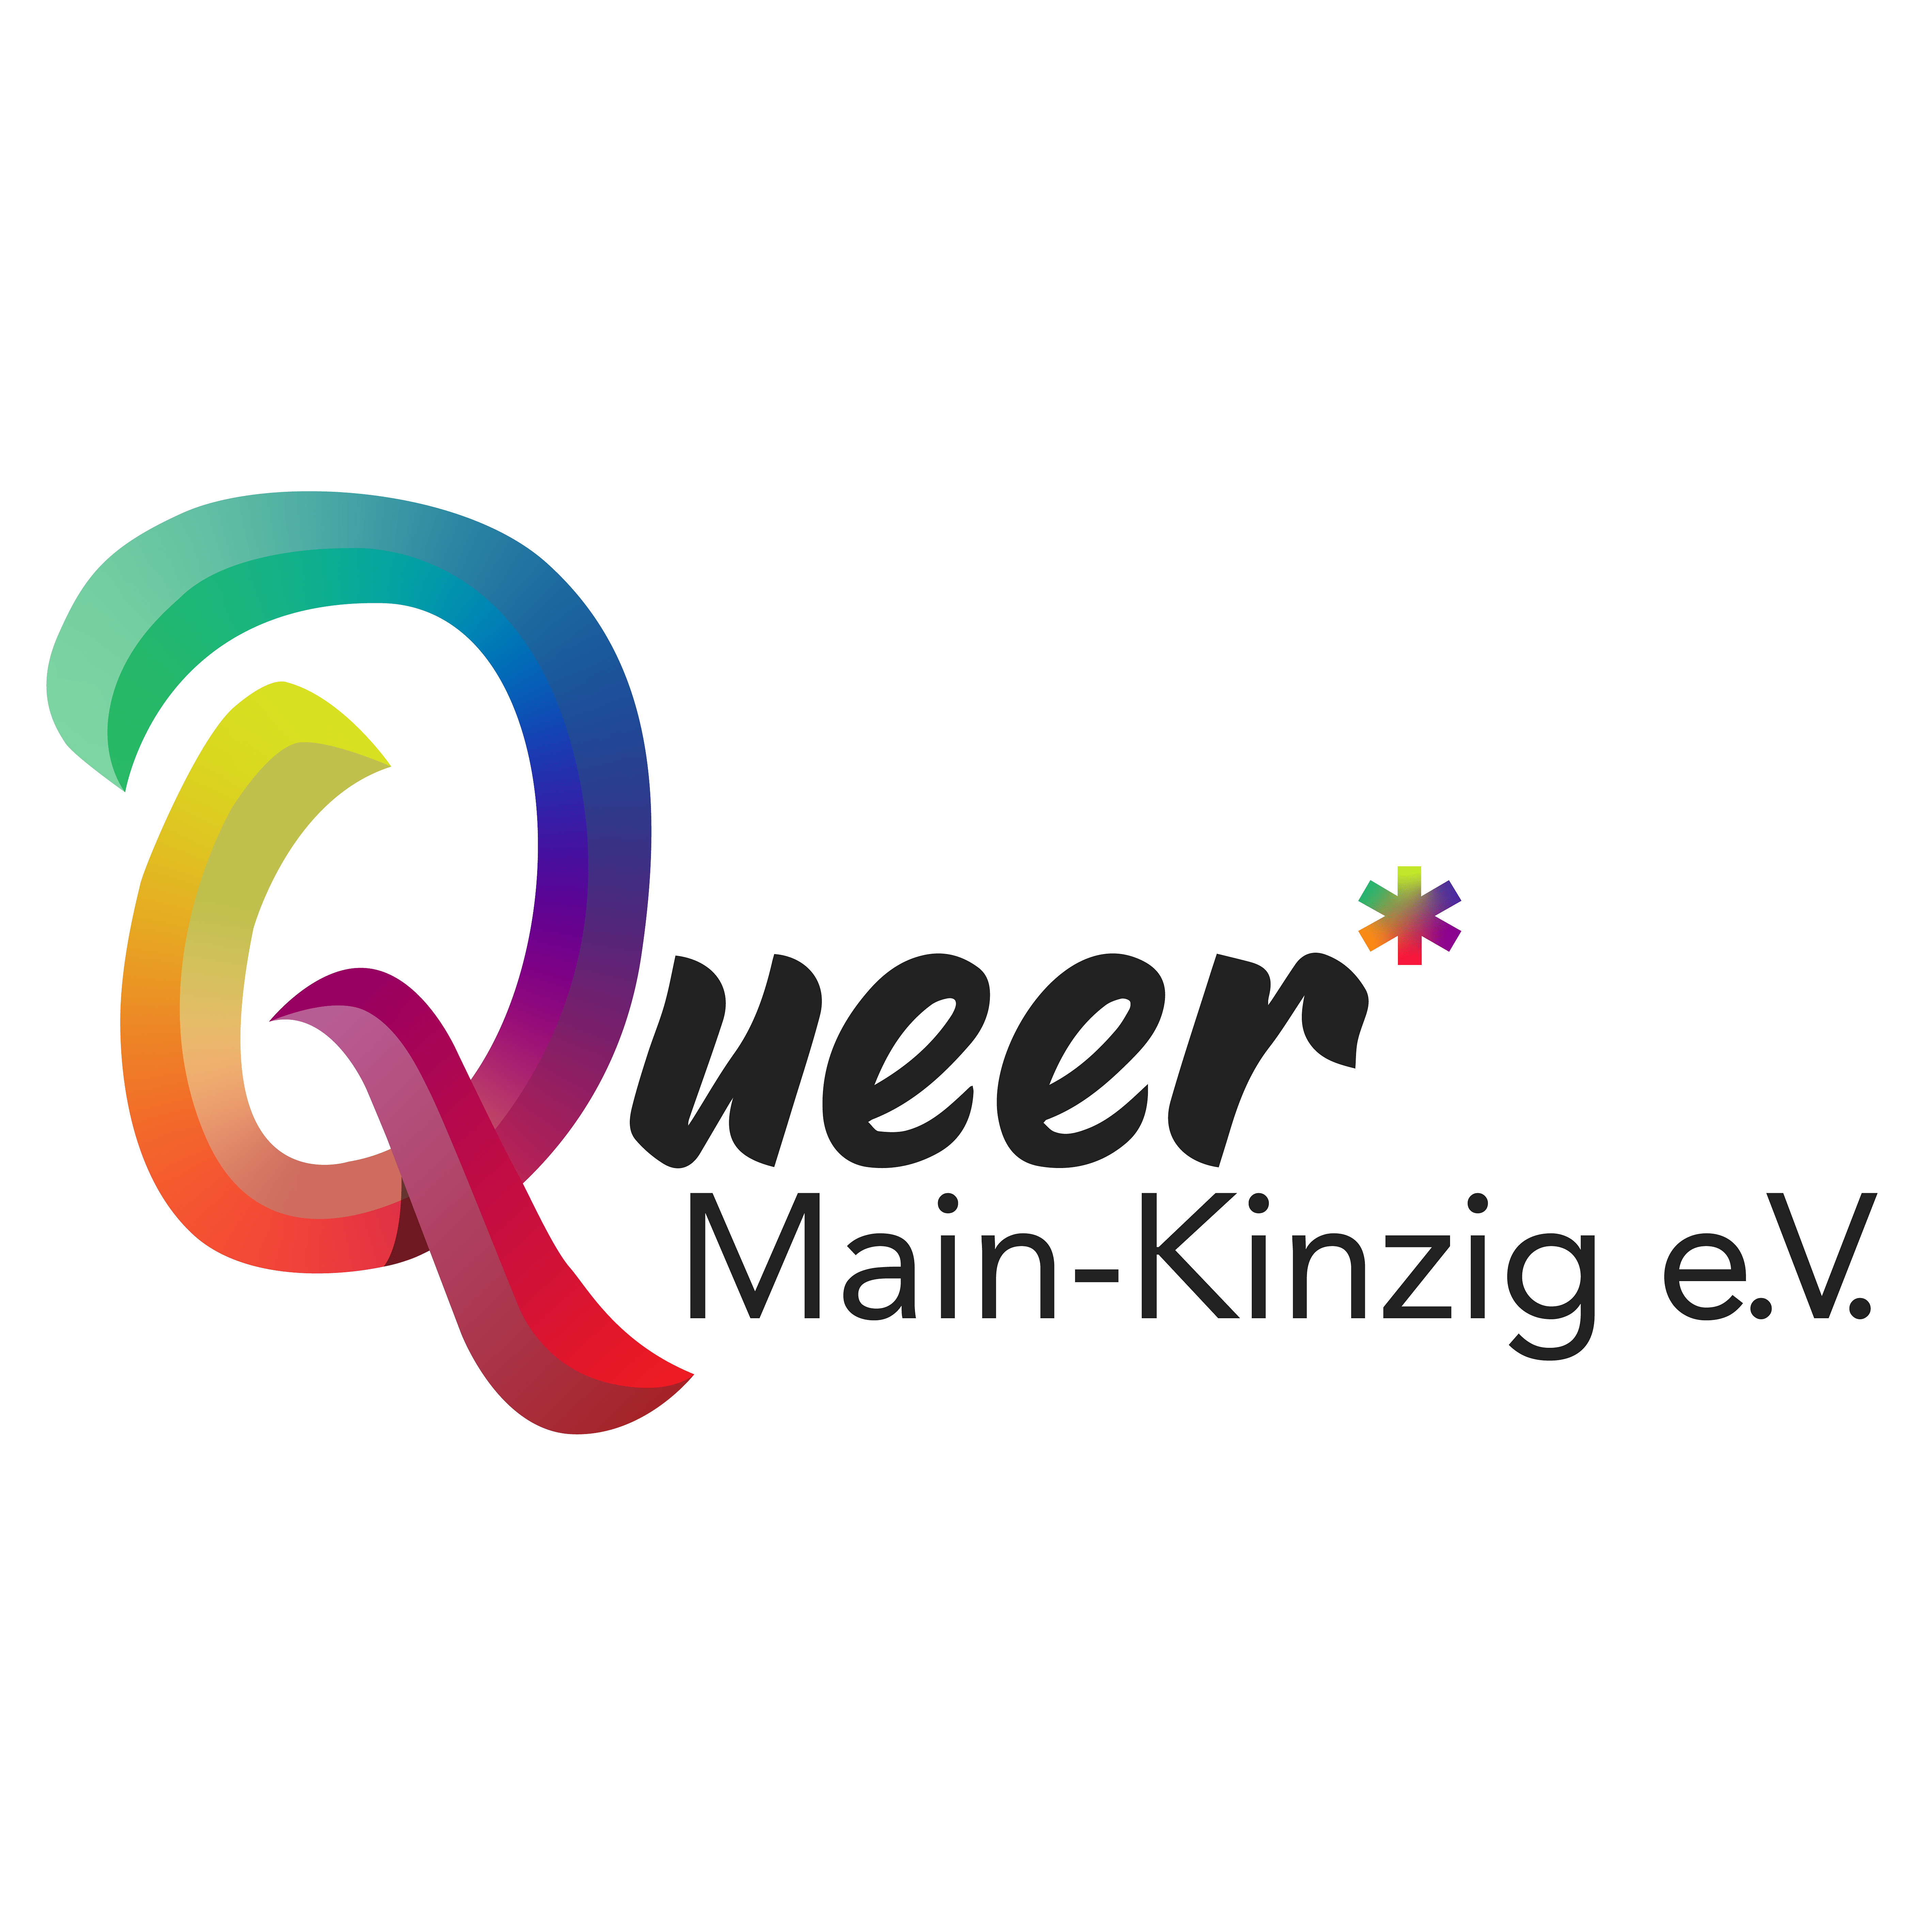 MKK Pride Main Kinzig